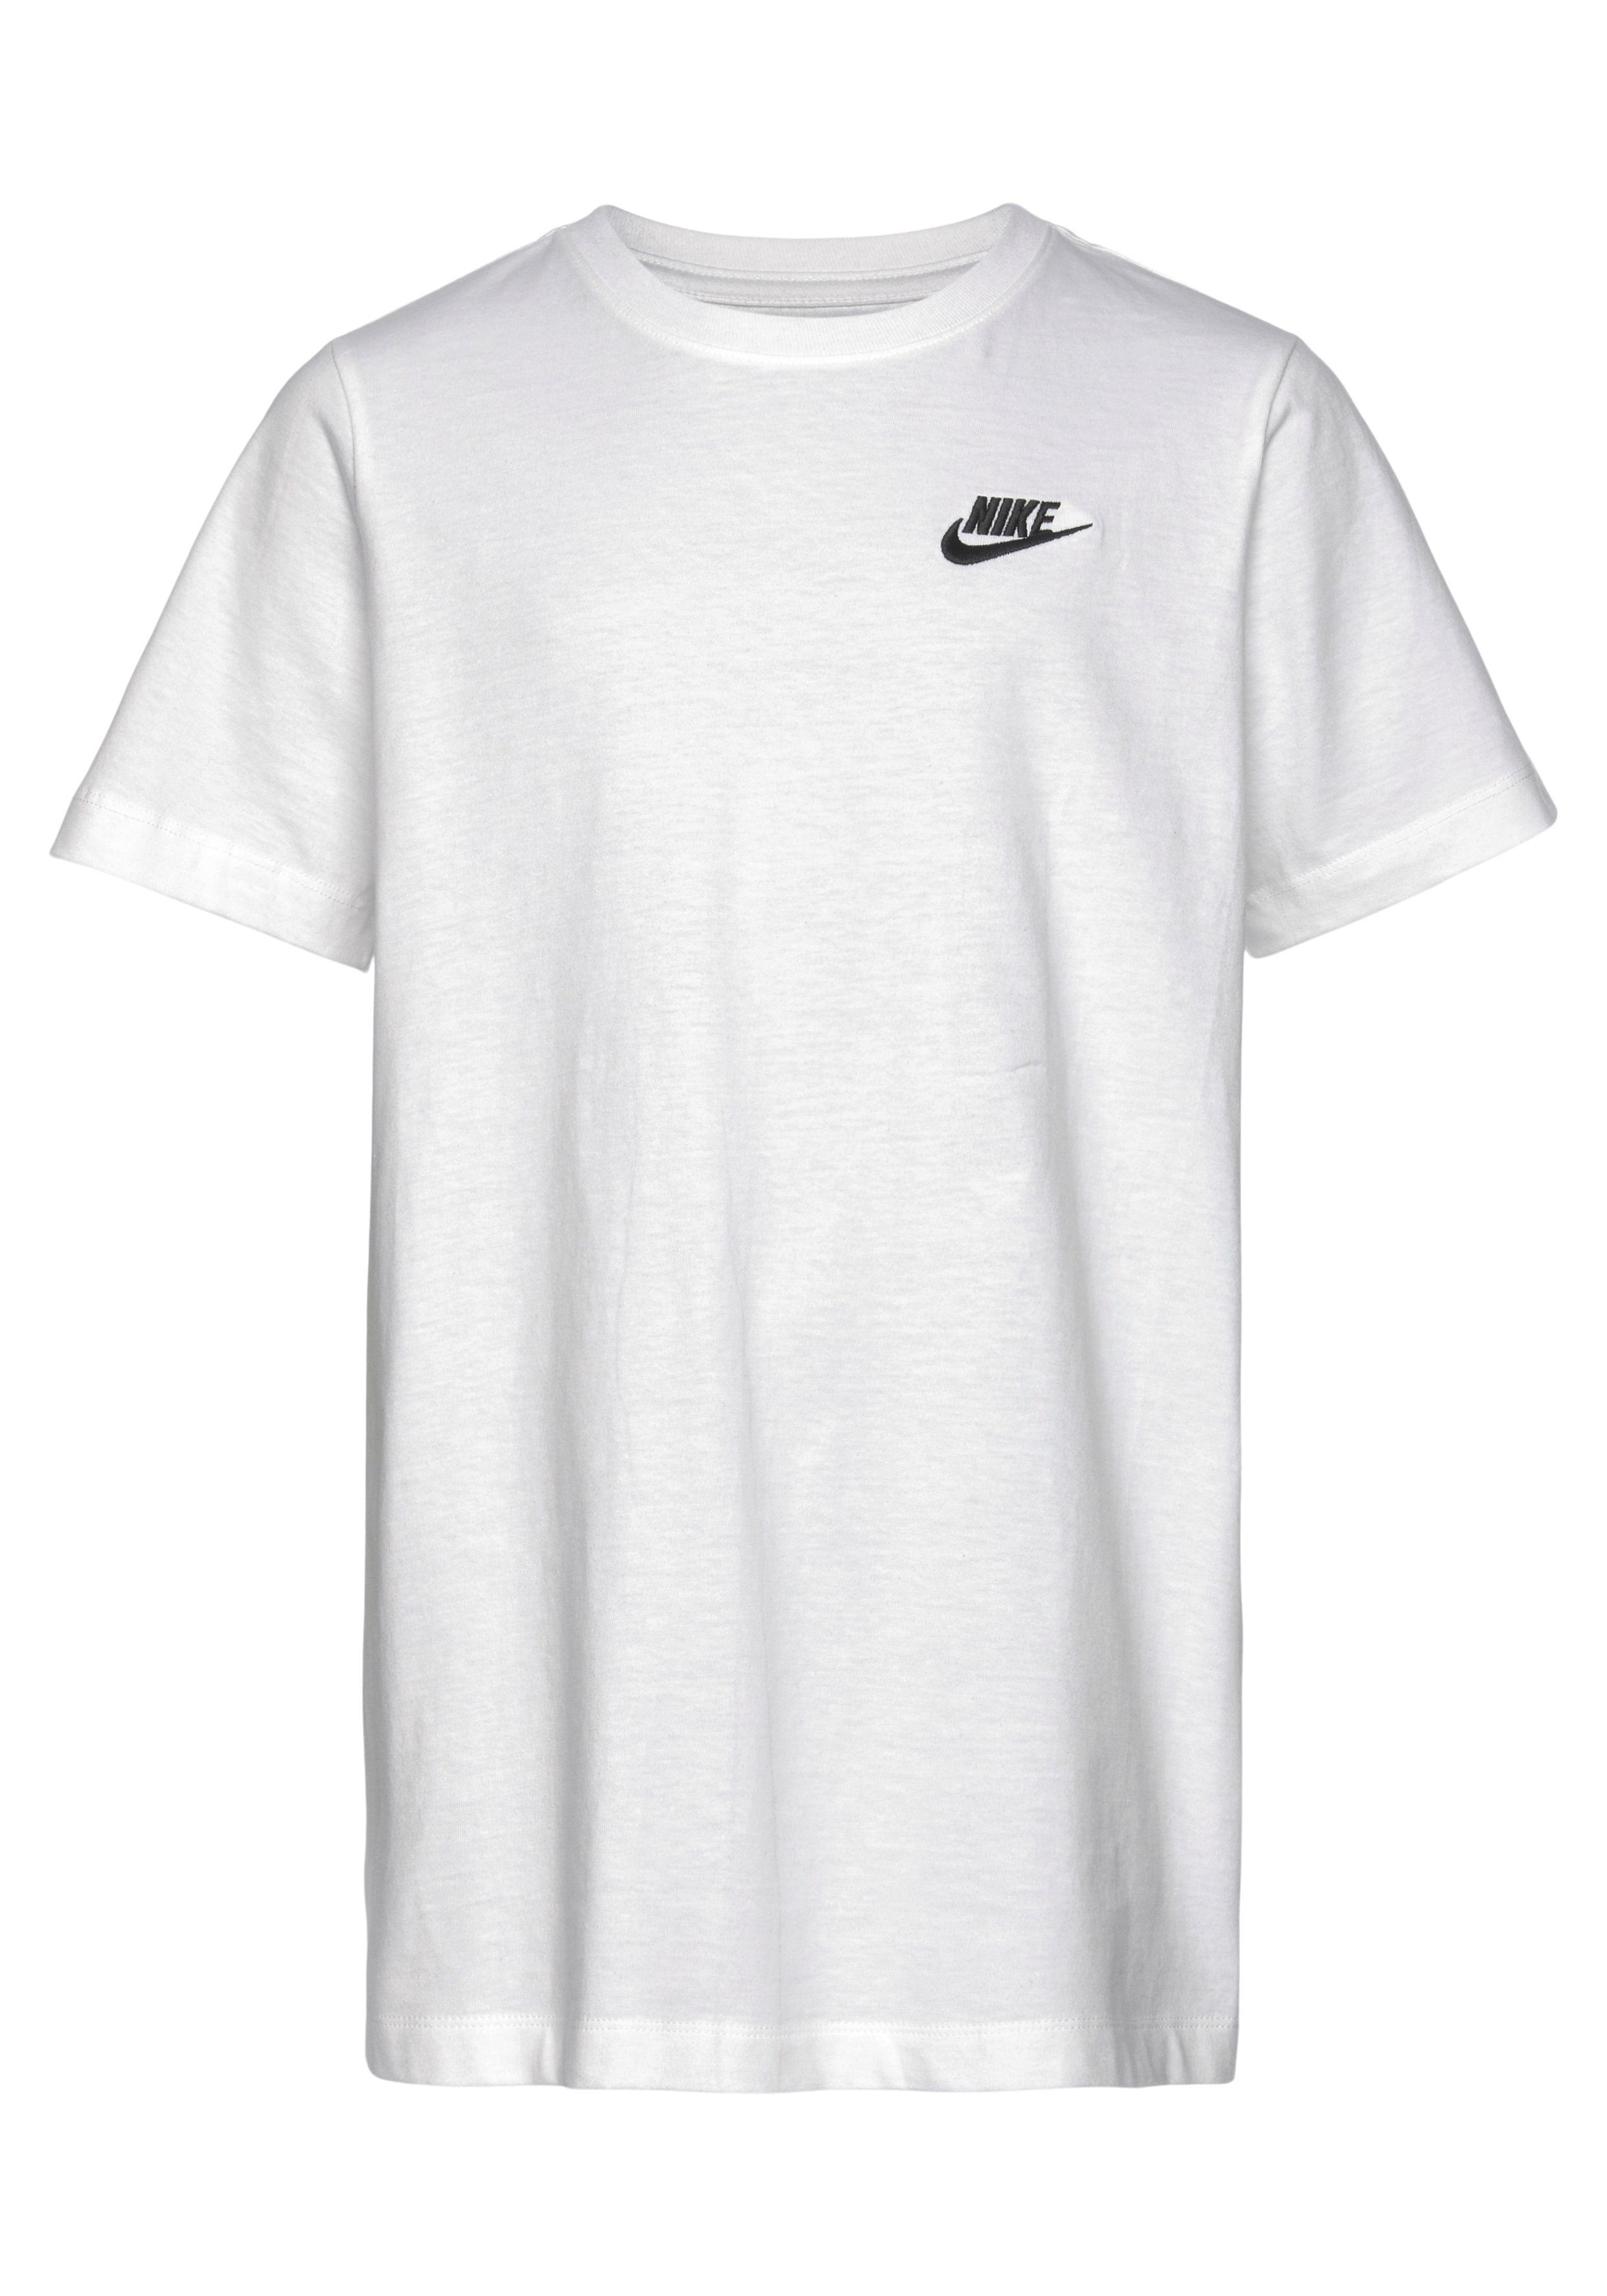 Nike Sportswear T-SHIRT KIDS' T-Shirt weiß BIG